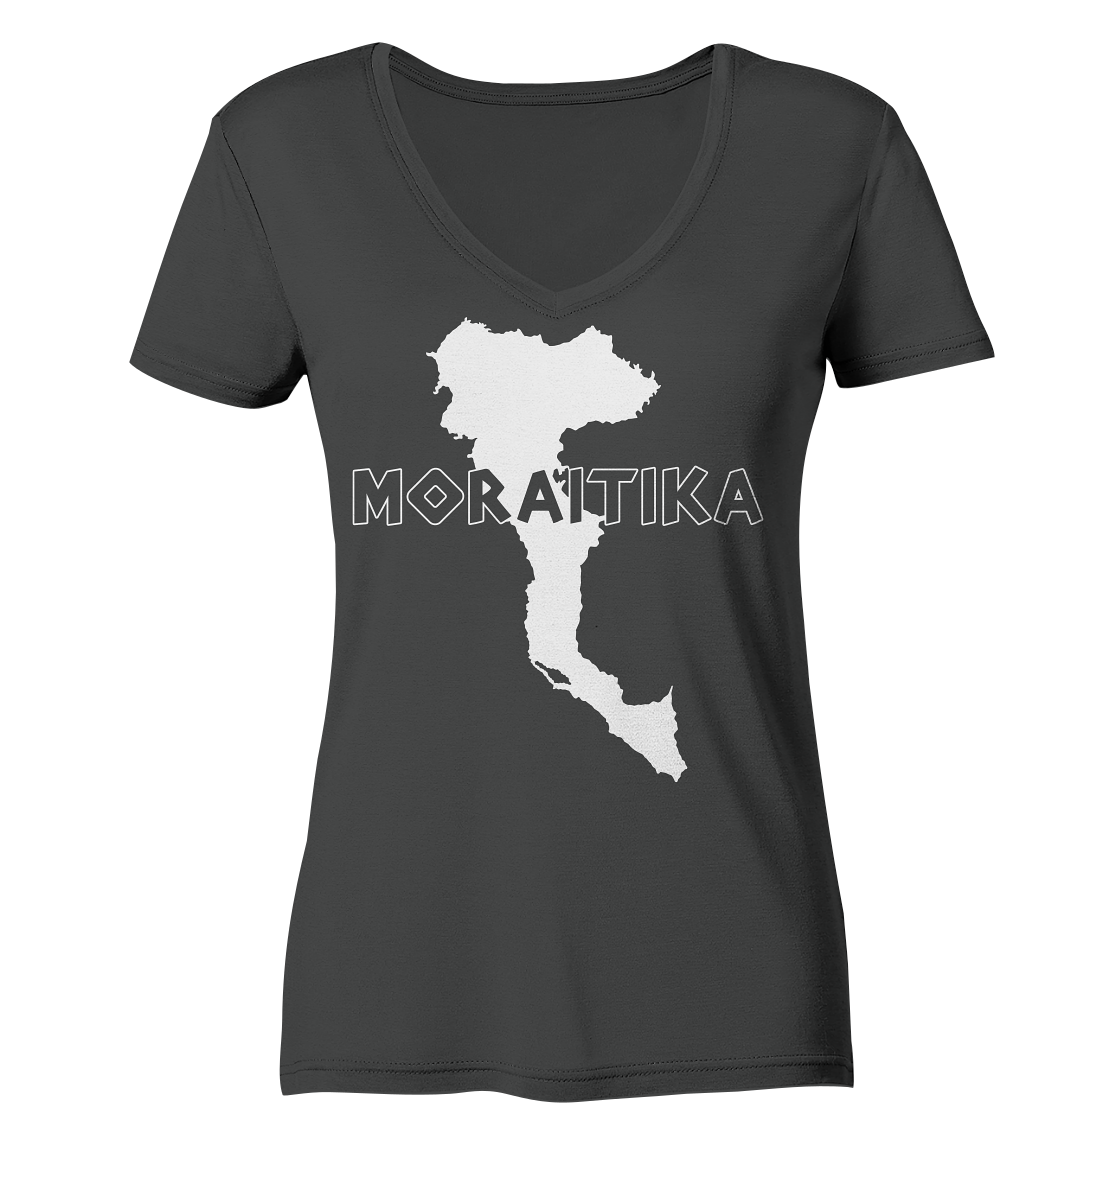 Moraitika Corfu Silhouette - Ladies Organic V-Neck Shirt